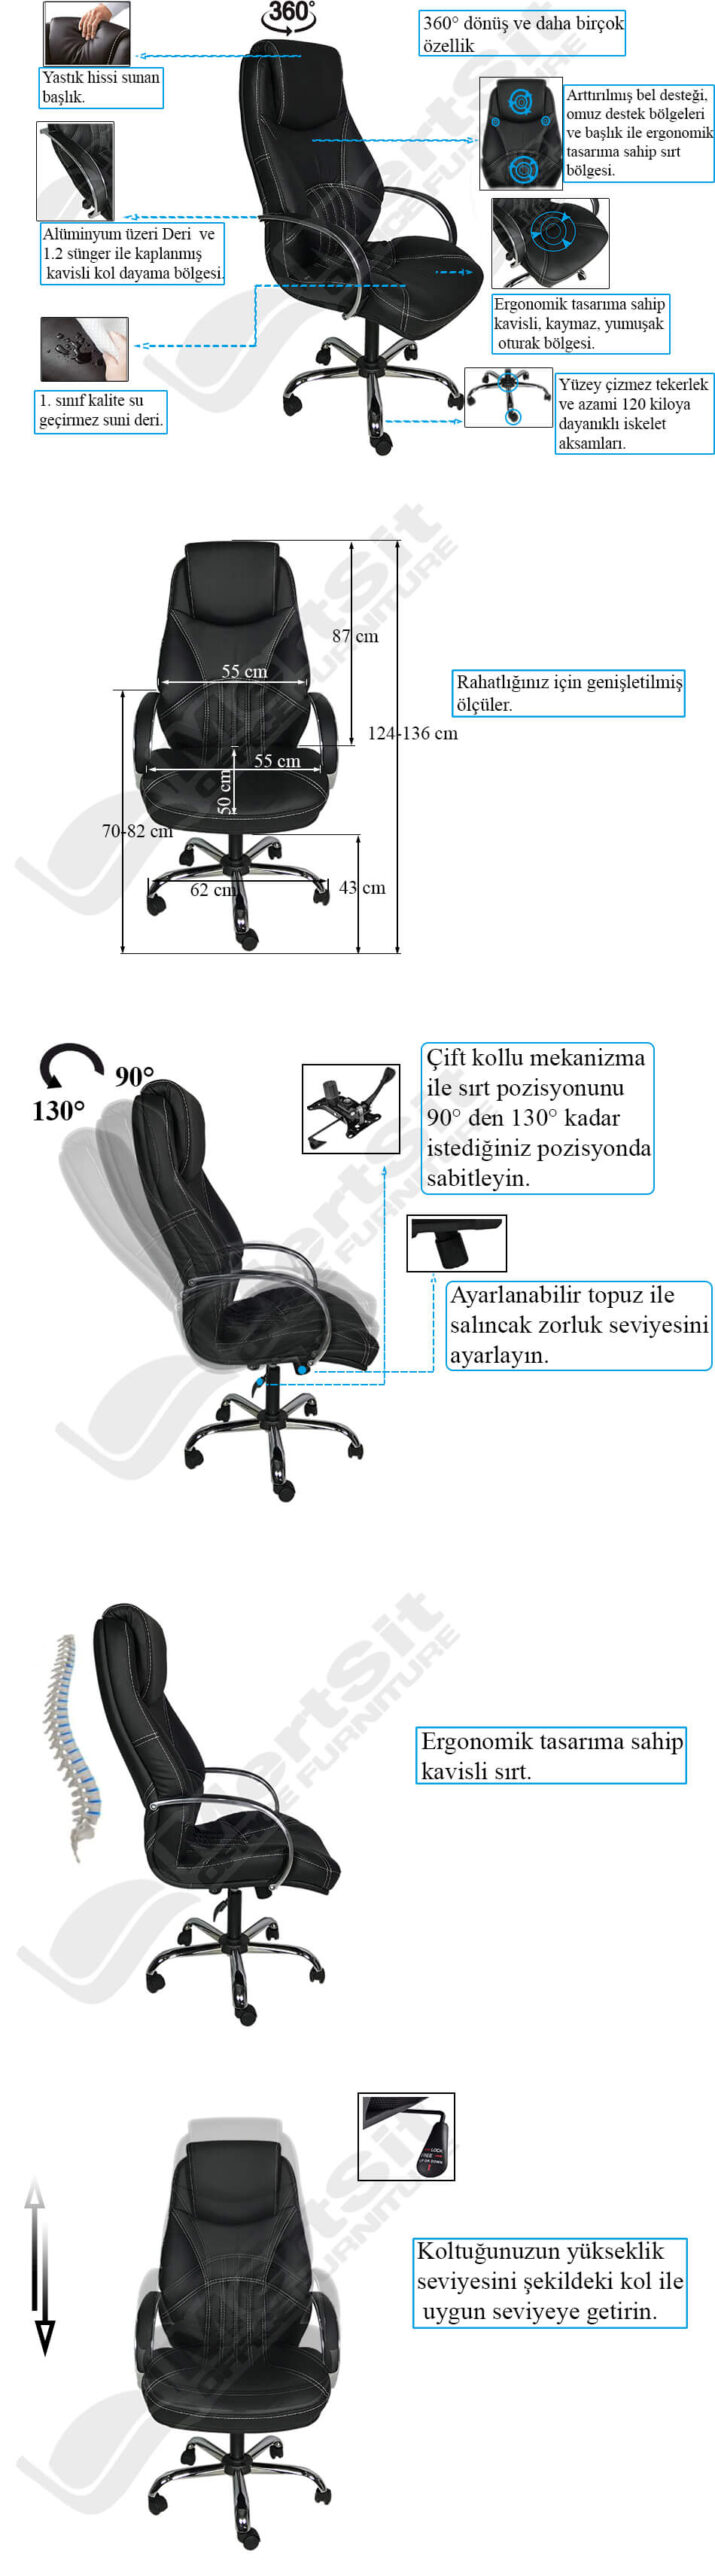 MertSit-Nico-Makam-Koltuğu-Müdür-Koltuğu-Yönetici-koltuğu-şeması